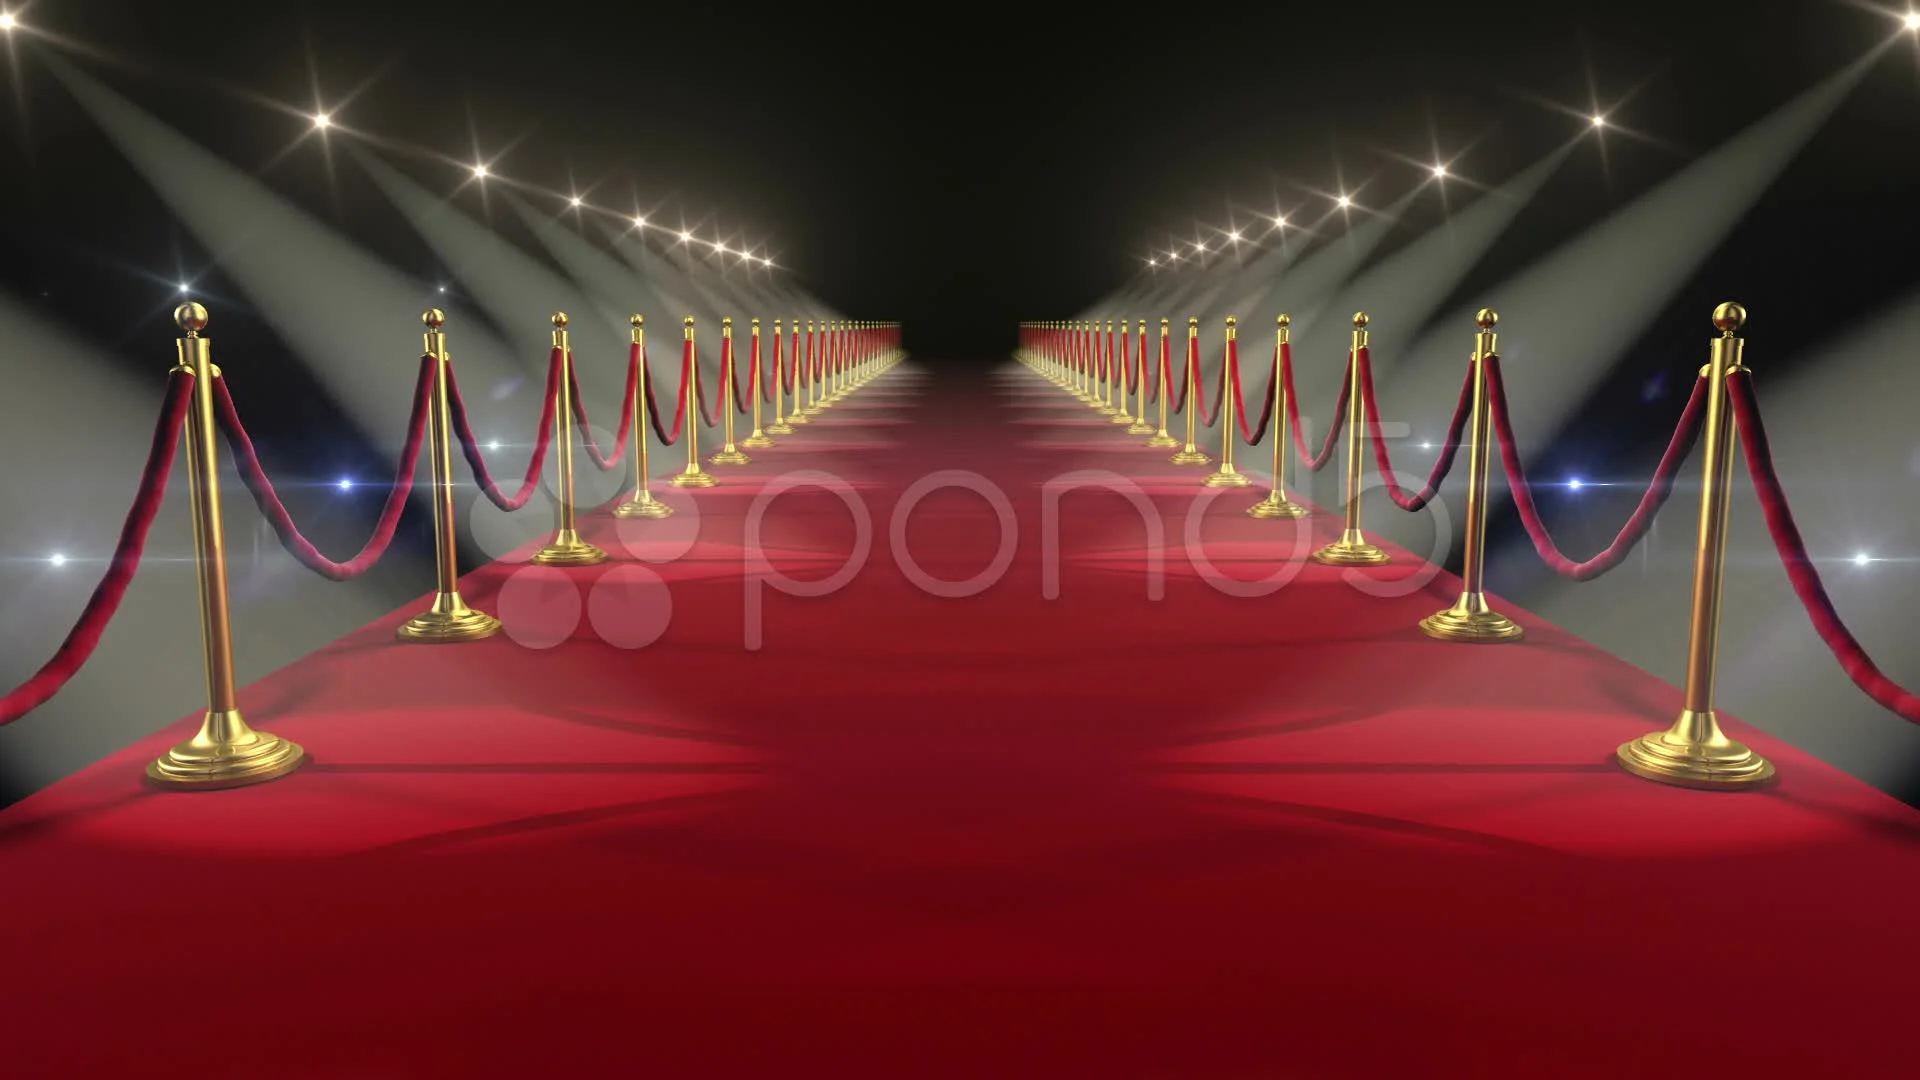 Đây là những mẫu hình ảnh về thảm đỏ được thiết kế với hiệu ứng động dễ thương và đầy phong cách. Hãy cùng chiêm ngưỡng những bước chân nhanh nhẹn trên thảm đỏ và tận hưởng cảm giác bạn đang là một ngôi sao được đón chào.